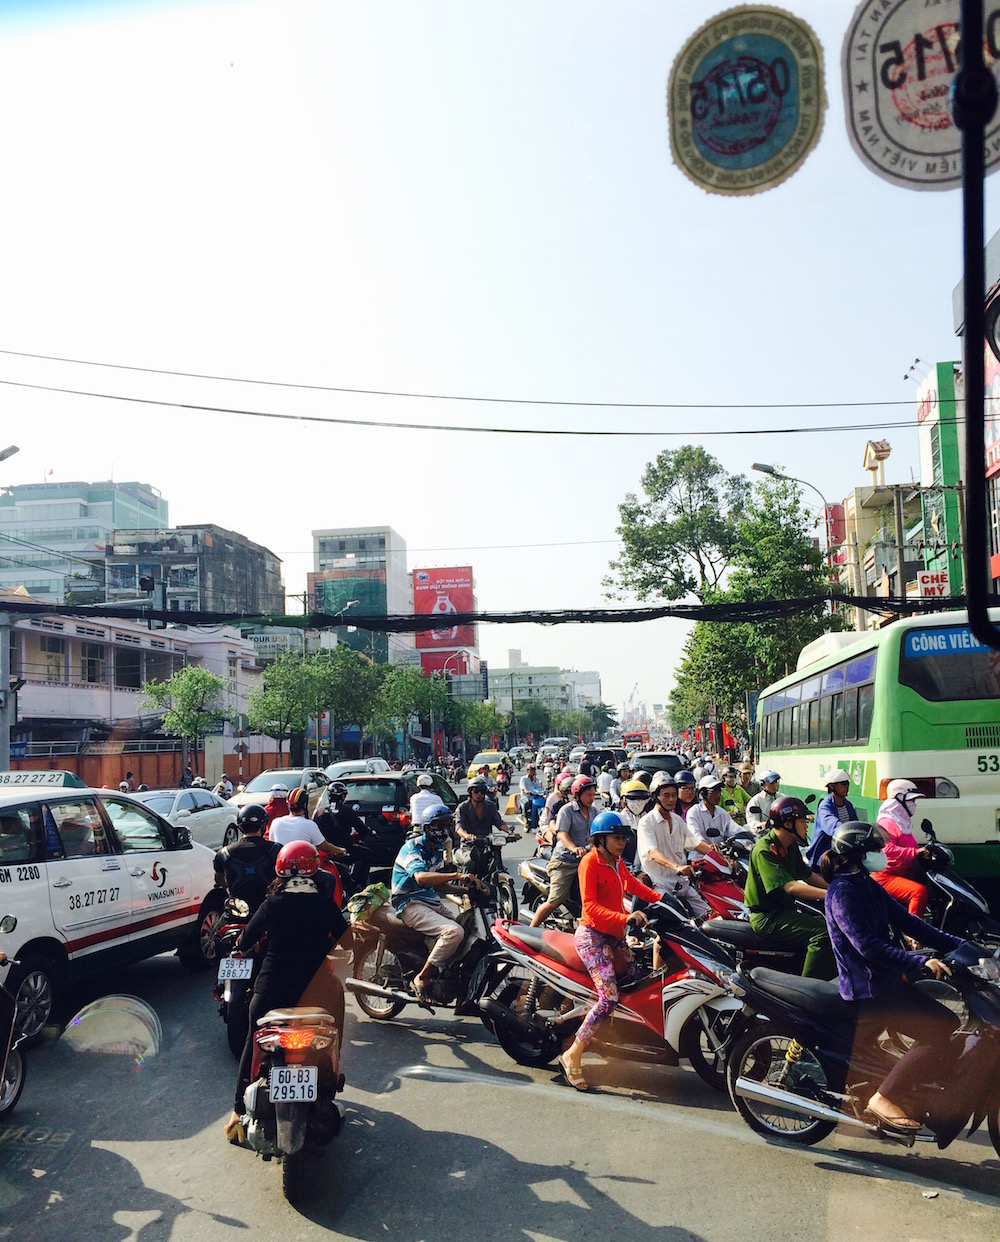 Traffic in Ho Chi Minh City, Vietnam 